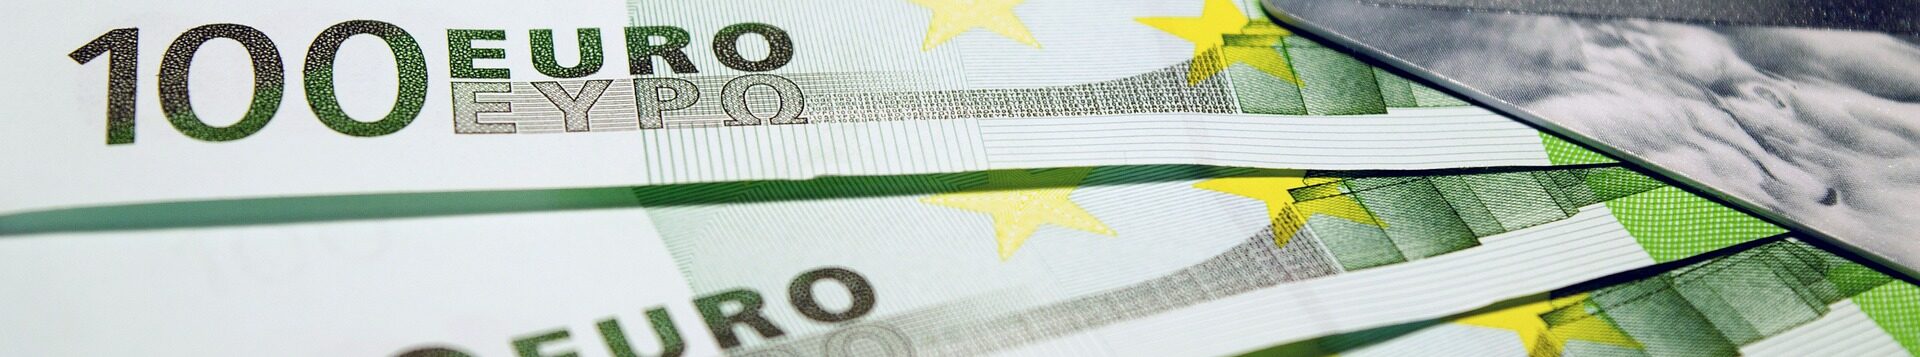 100-Euro-Scheine und eine Kreditkarte liegen aufgefächert auf einem Tisch, Nahaufnahme